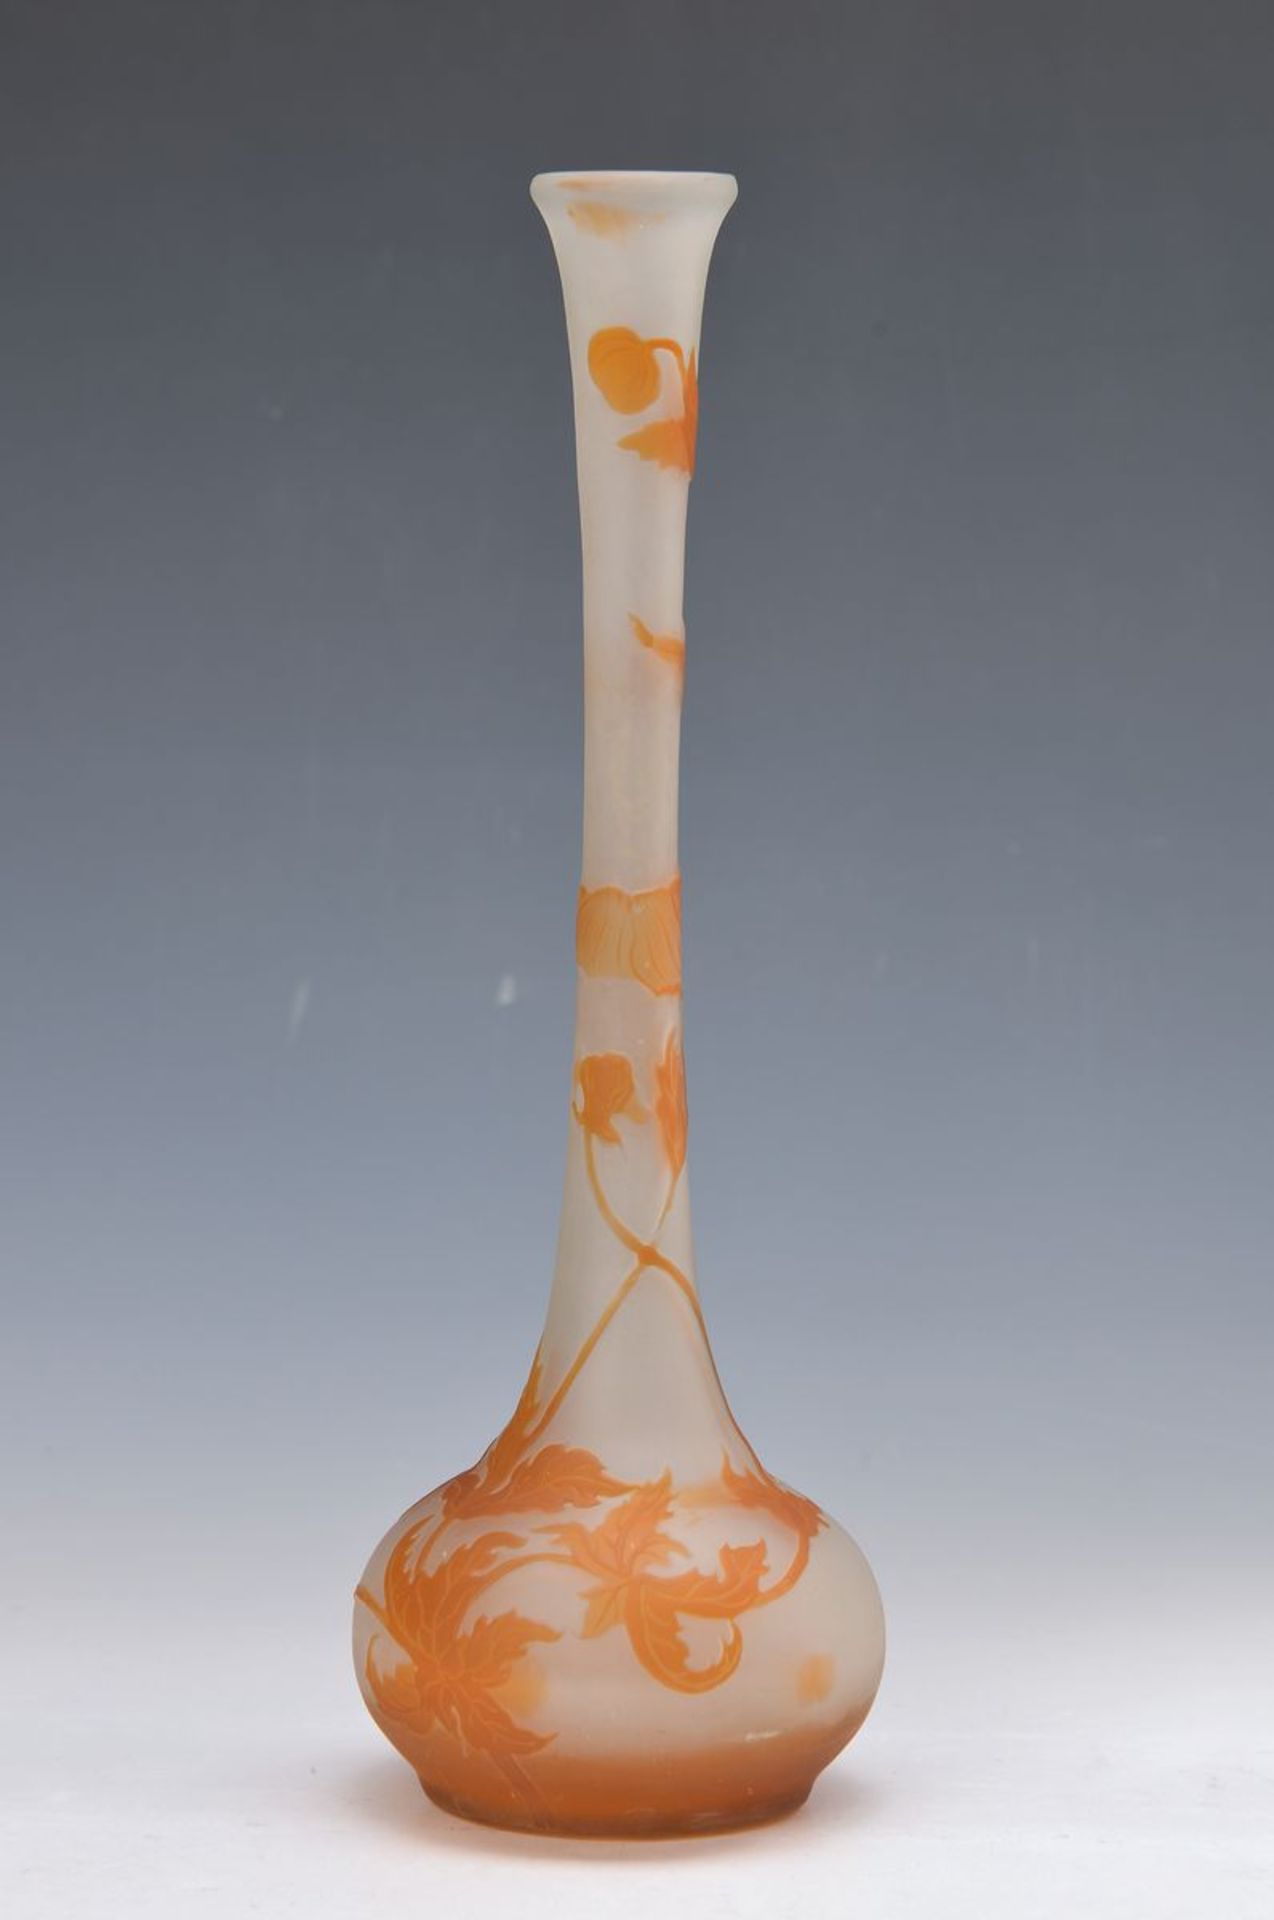 Stangenvase, Emile Gallé, um 1910, orangerot überfangenes mundgeblasenes Glas, geschnitten und